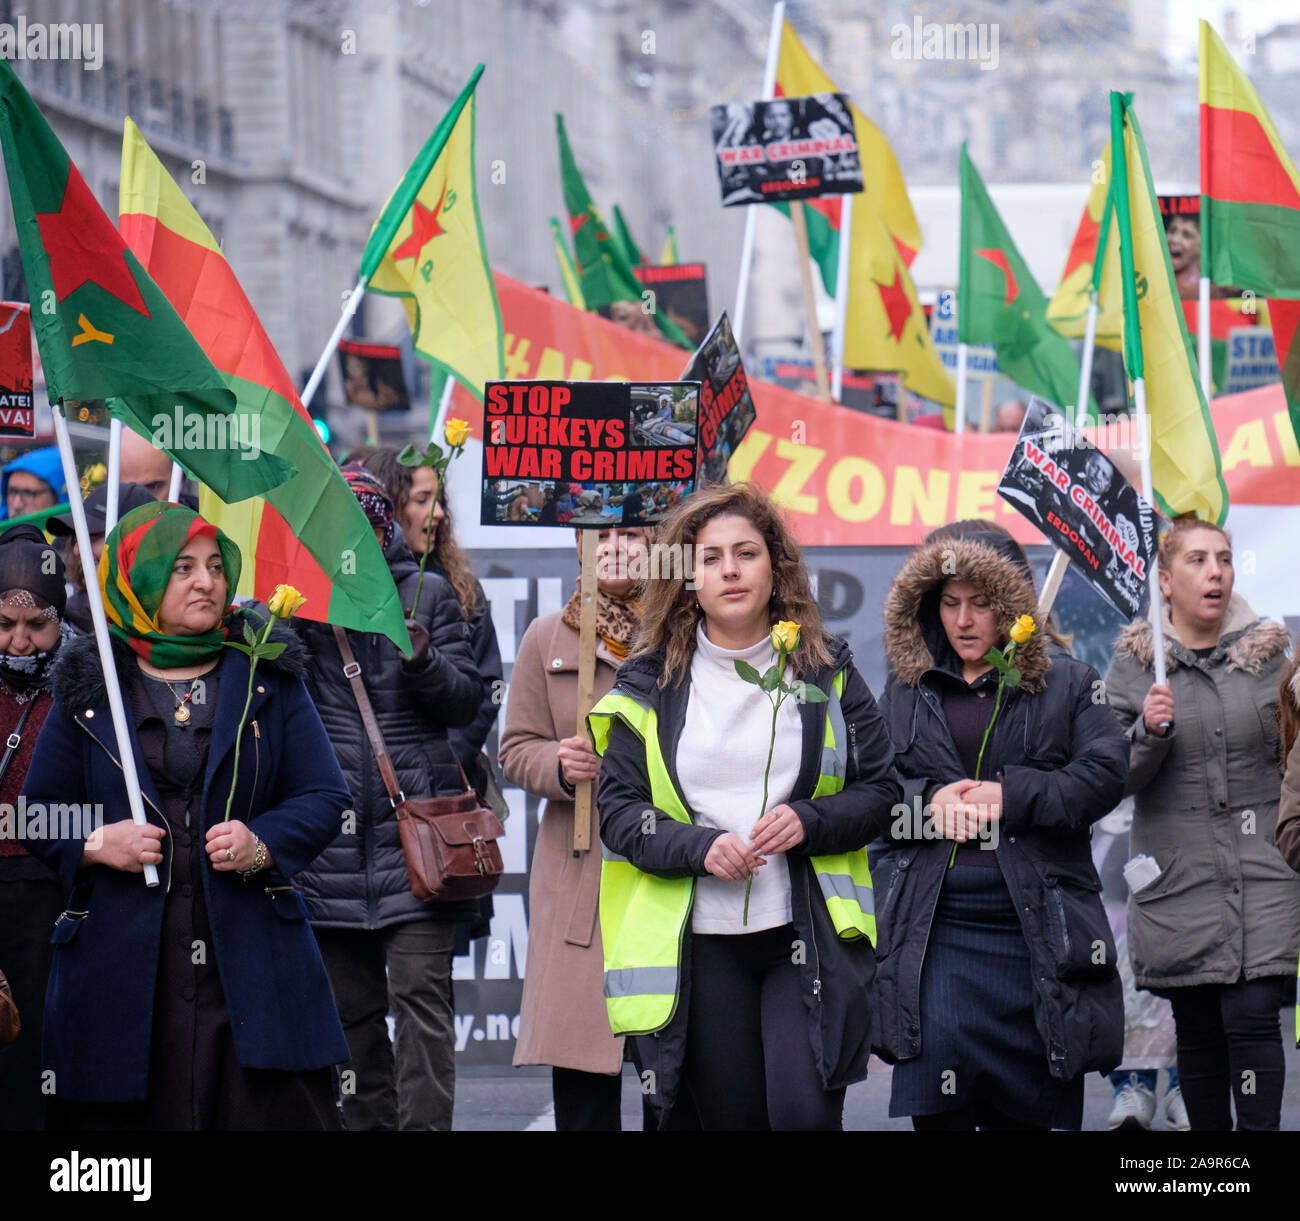 Londra, Regno Unito. 17 Nov 2019. I curdi britannici che hanno condotto un rally in via di Londra per denunciare l'invasione di Rojava da parte dello stato turco, e chiedono alle nazioni internazionali di agire e che l'opinione pubblica britannica sia solidale con la lotta curda. Donne che portano una rosa gialla come simbolo di pace Foto Stock